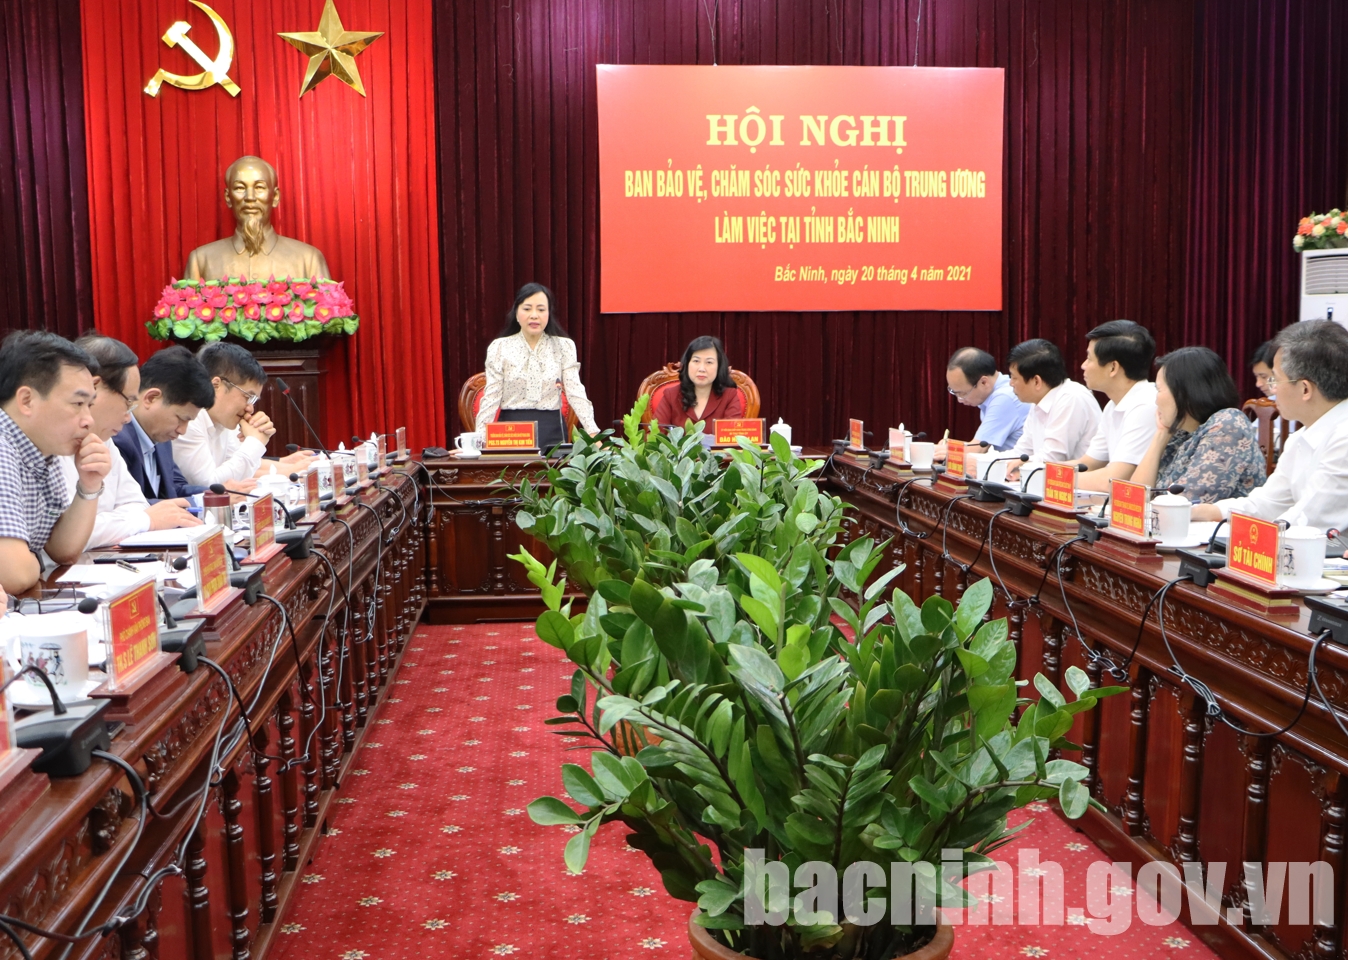 Đoàn công tác của Ban Bảo vệ chăm sóc sức khỏe cán bộ Trung ương làm việc tại Bắc Ninh